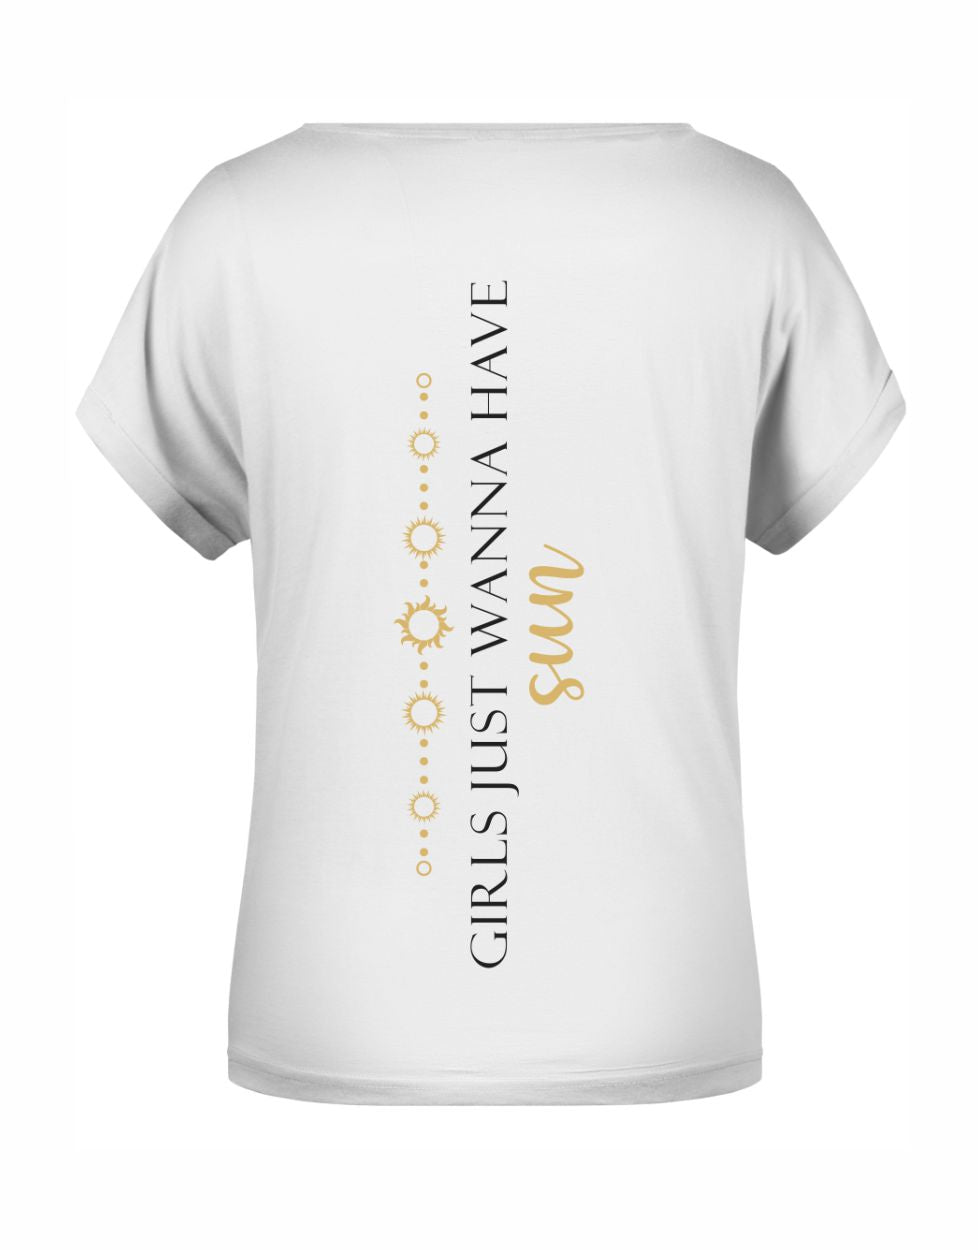 "Girls Just Wanna Have Sun" T-Shirt